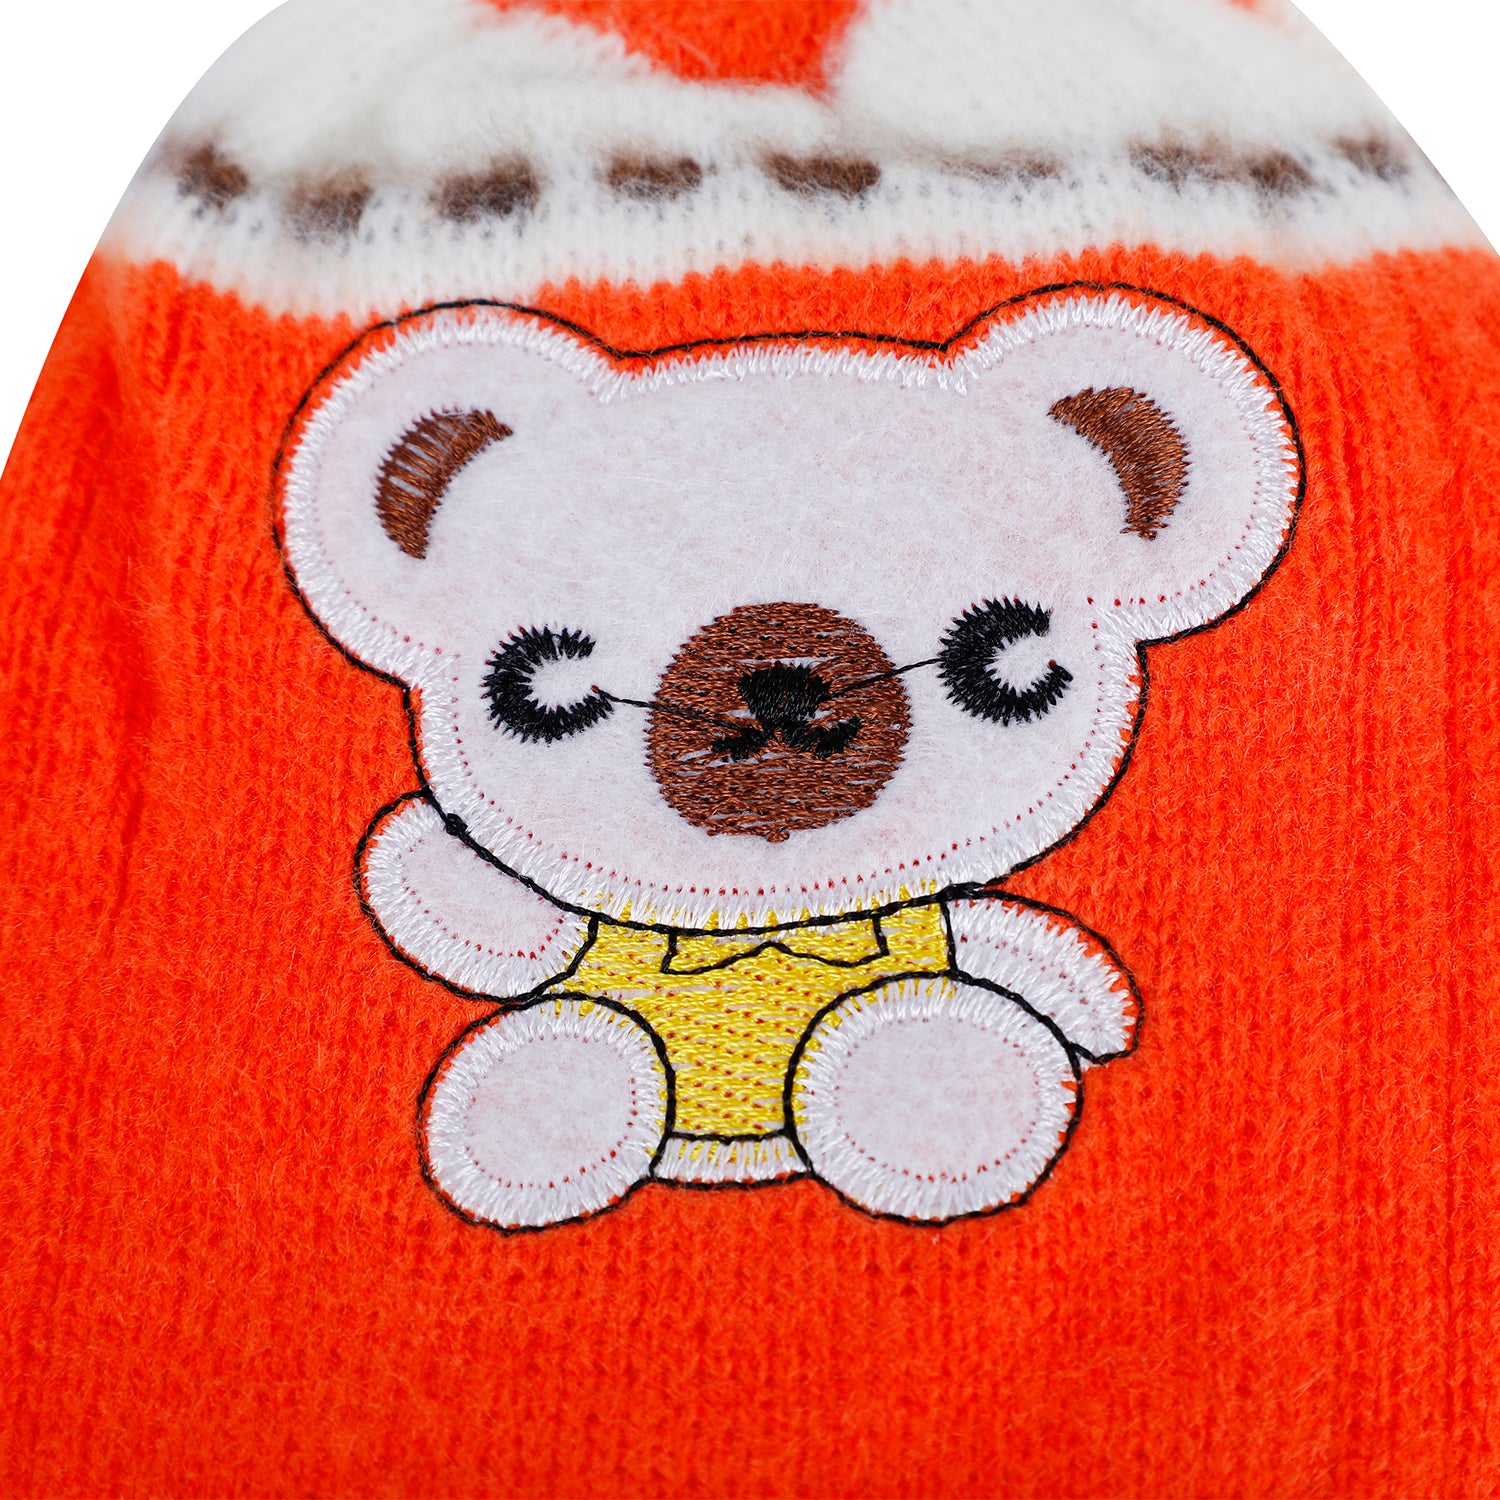 Baby Moo Koala Breathable Beanie Warm Knitted Woollen Cap - Orange